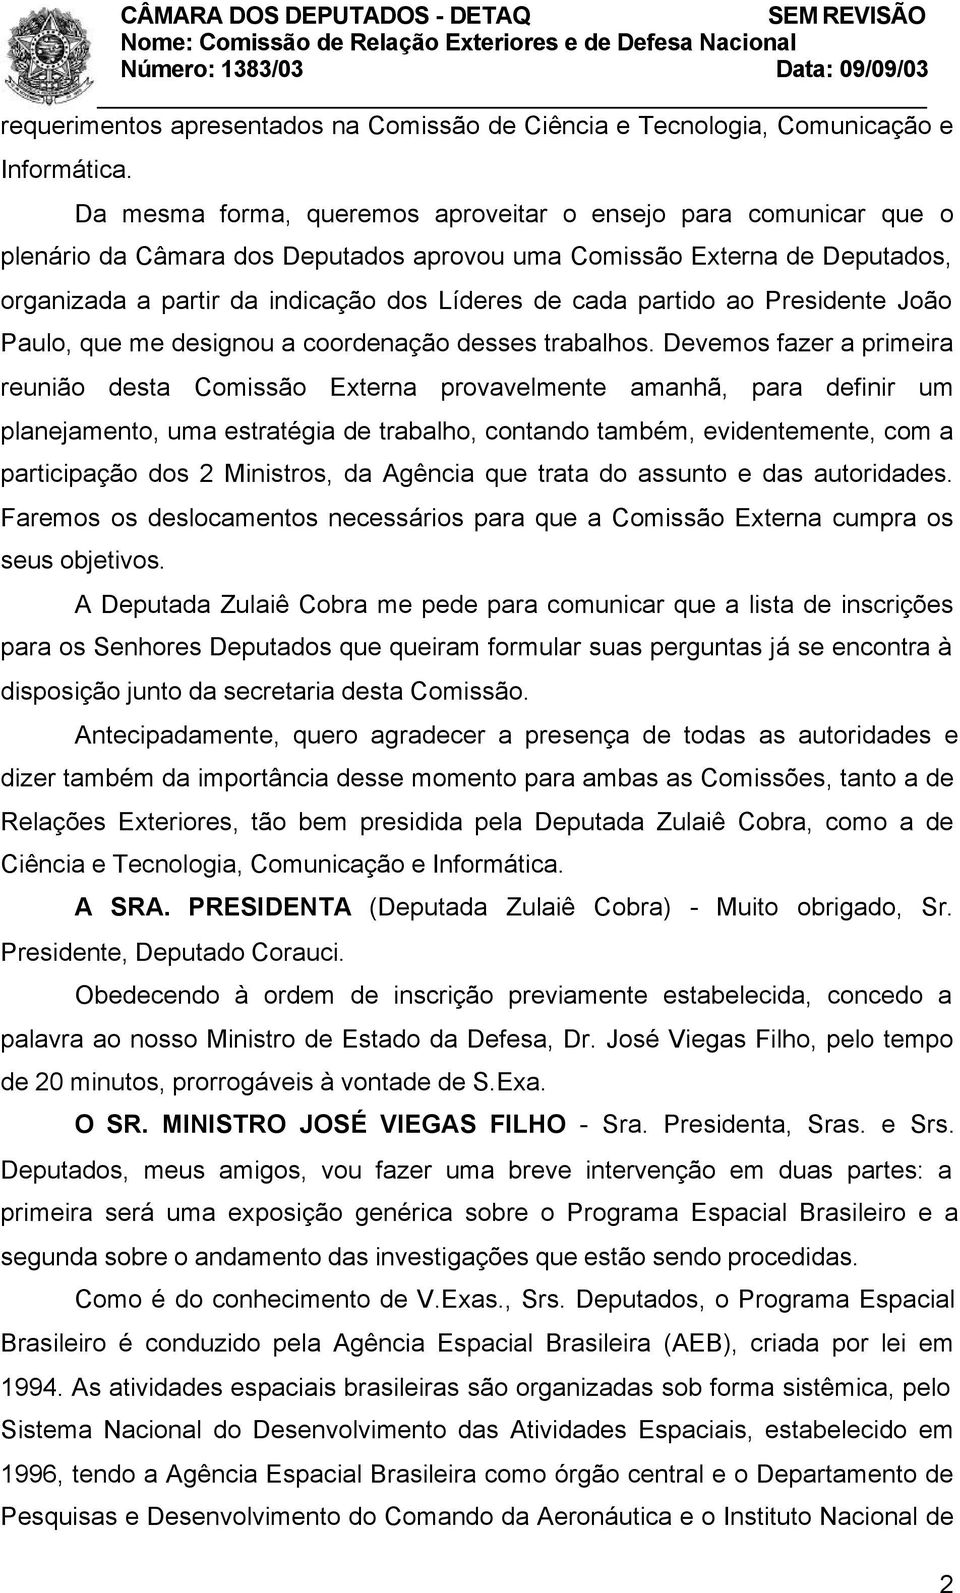 partido ao Presidente João Paulo, que me designou a coordenação desses trabalhos.